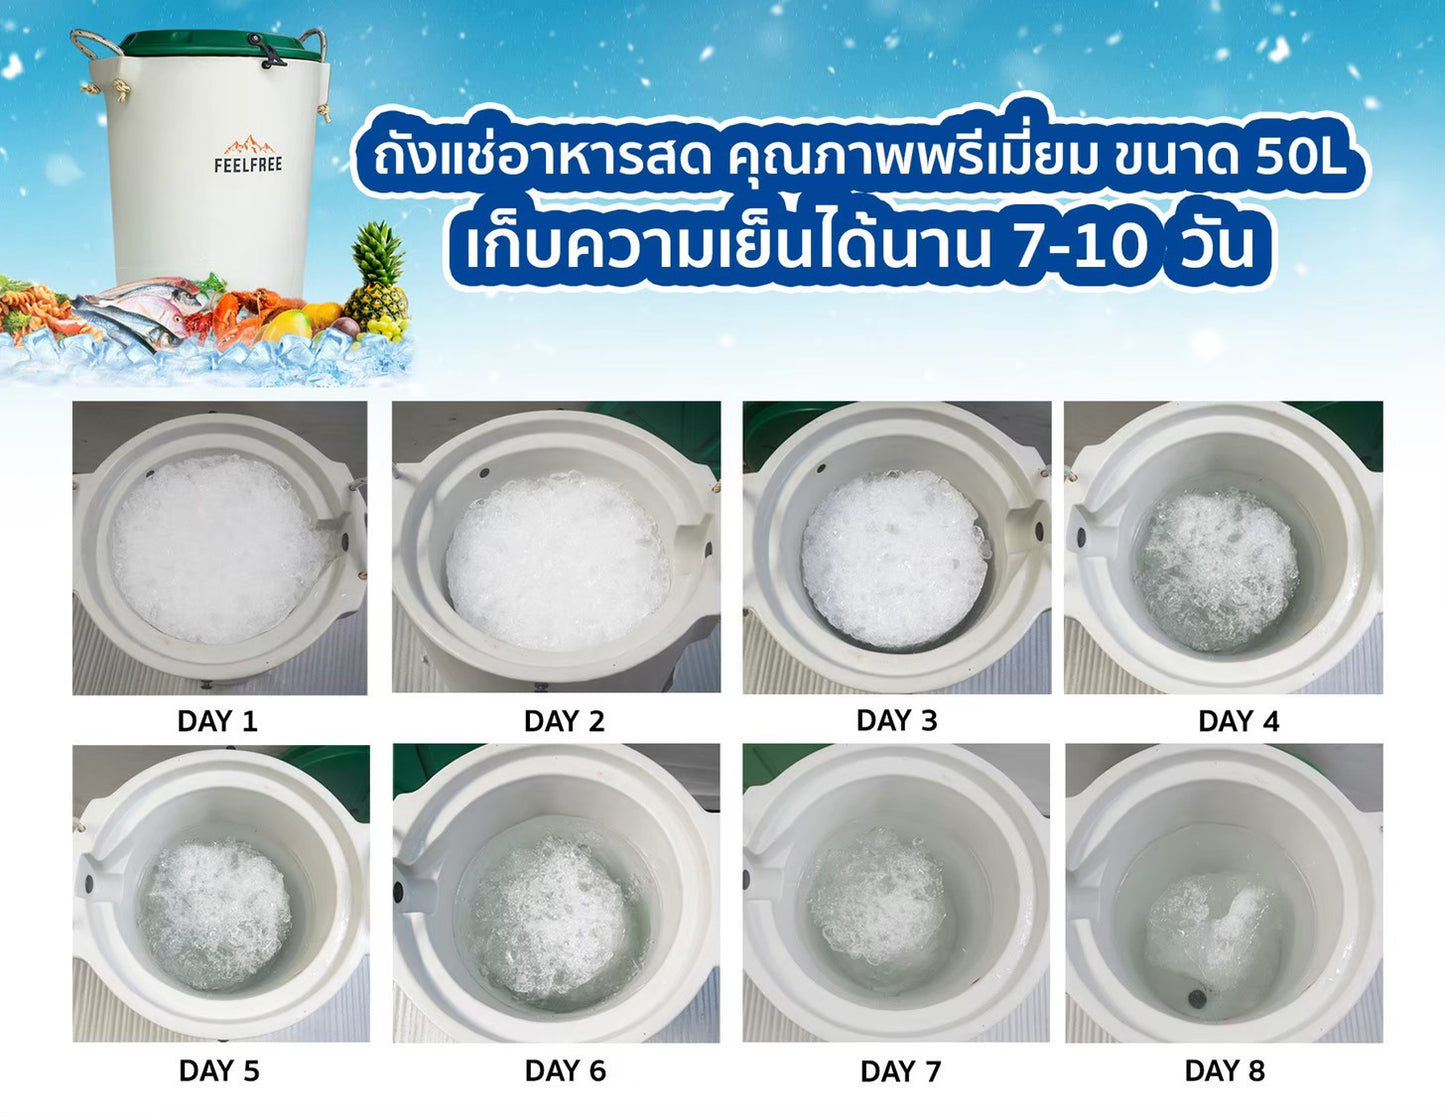 FEELFREE INNER BIN ถังน้ำแข็ง ถังเก็บความเย็น ถังแช่อาหารสดหรือเครื่องดื่ม เก็บความเย็นได้ 7-10 วัน ความจุ 50L